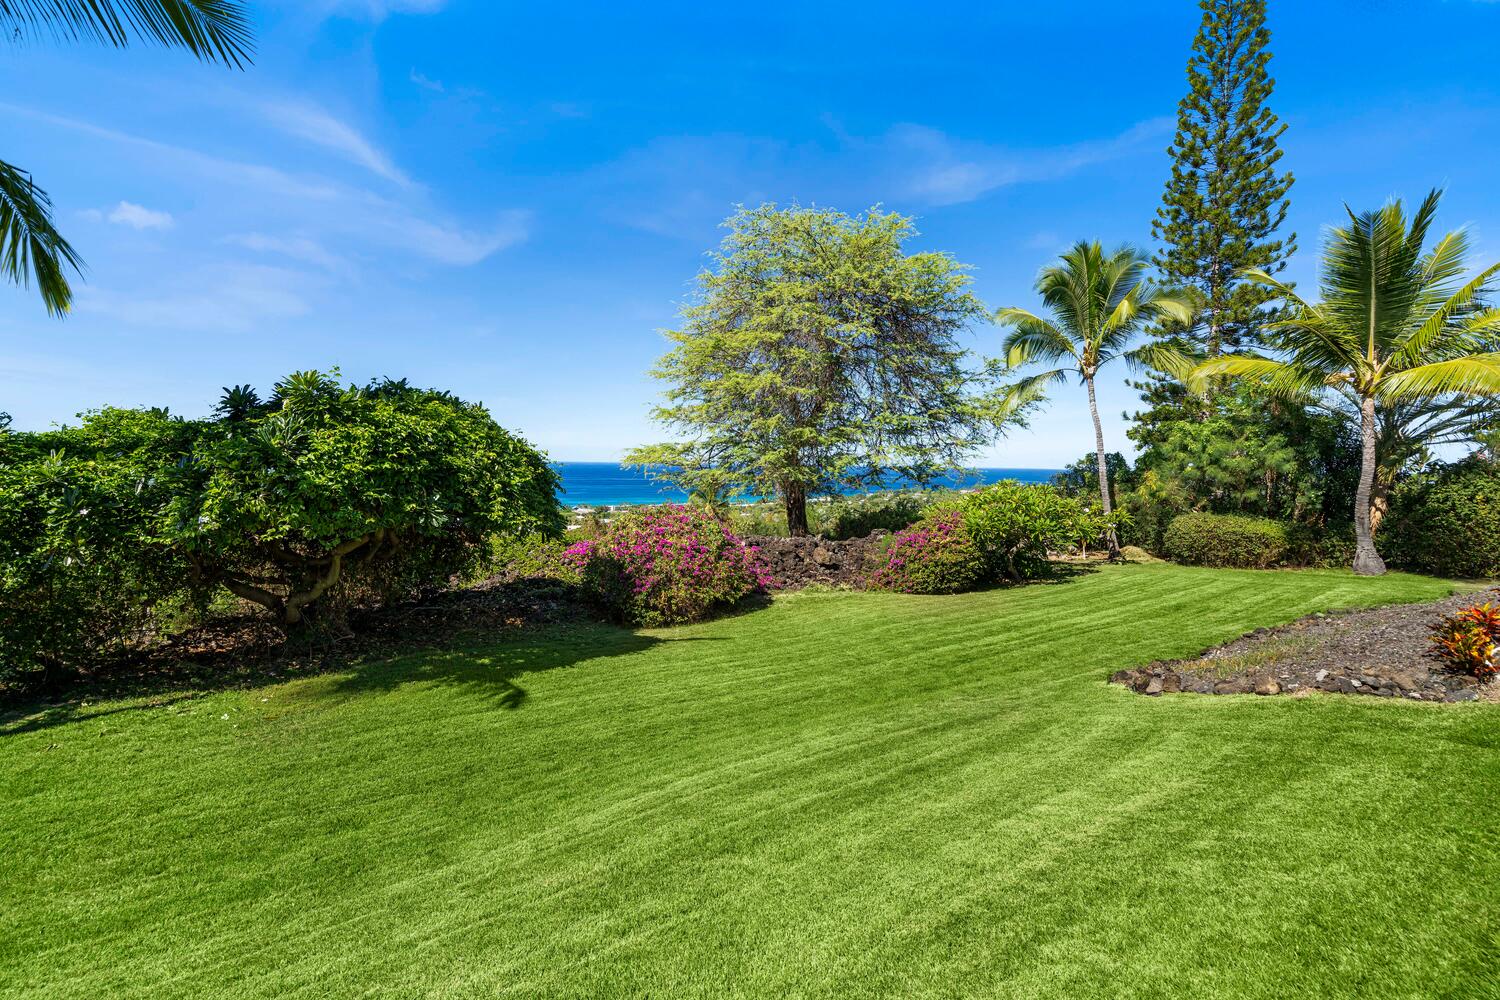 Kailua Kona Vacation Rentals, Ho'okipa Hale - Lush greenery in the backyard.